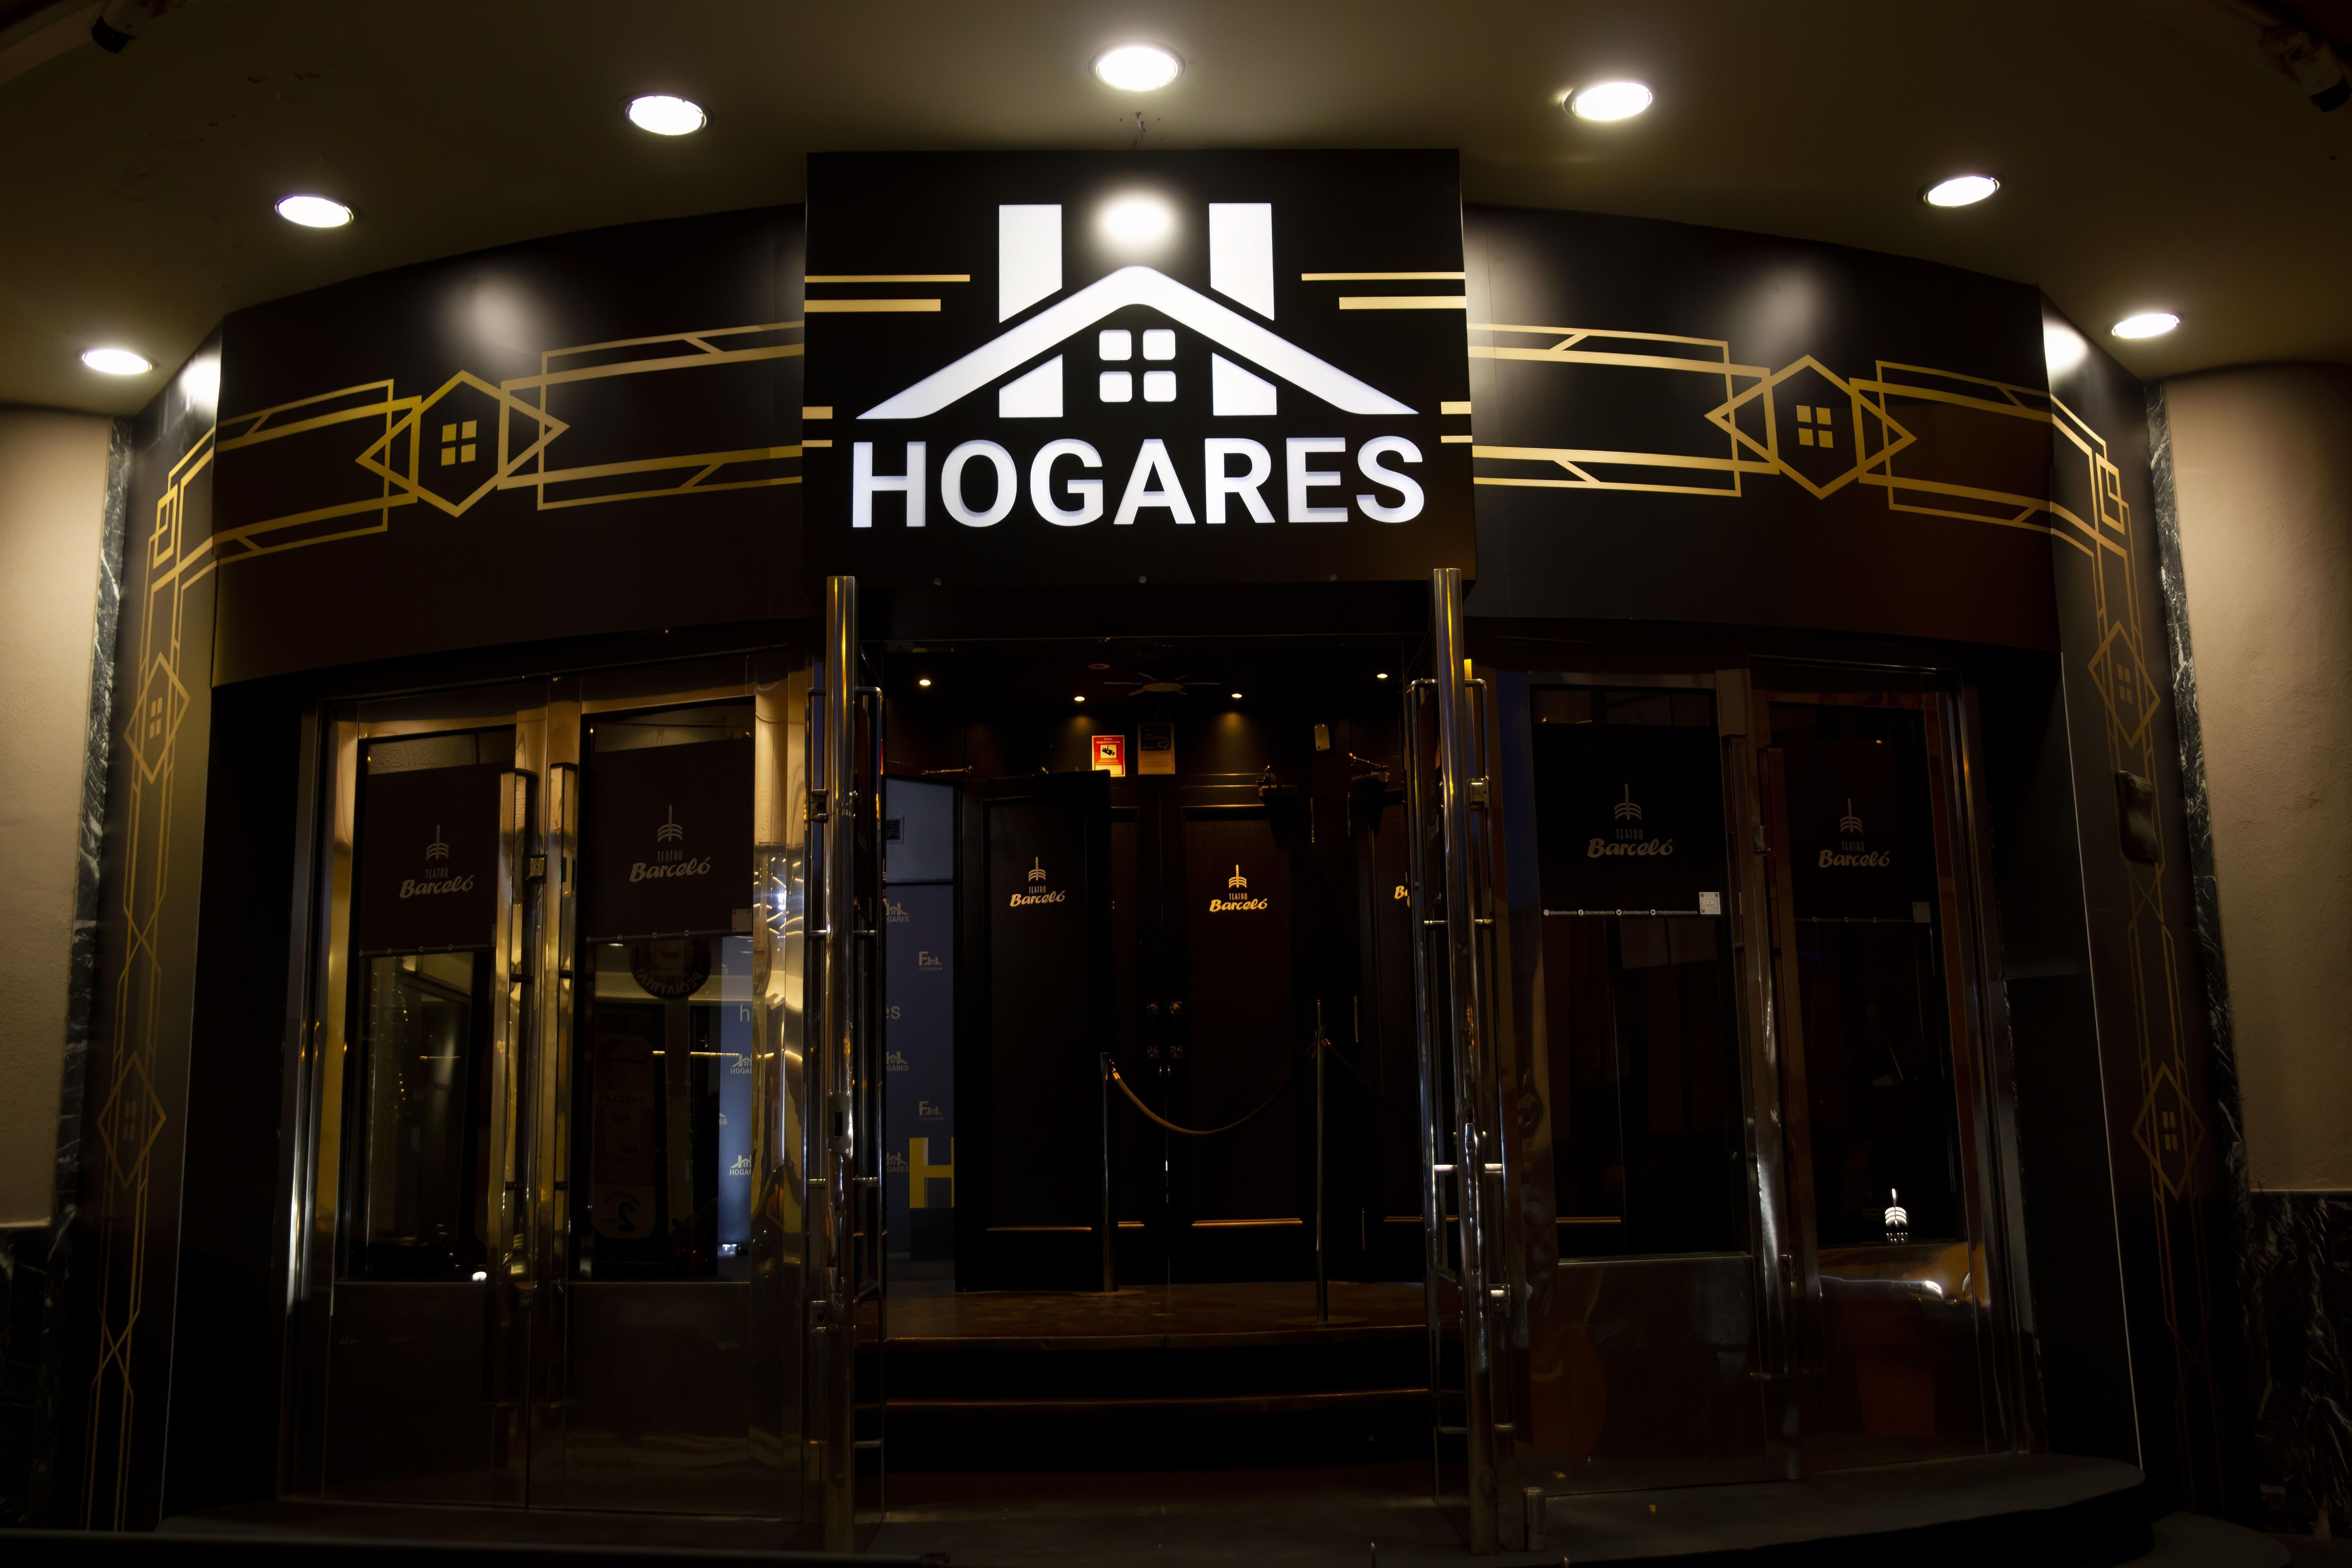 "Hogares", la inmobiliaria del futuro se presenta en sociedad en Madrid